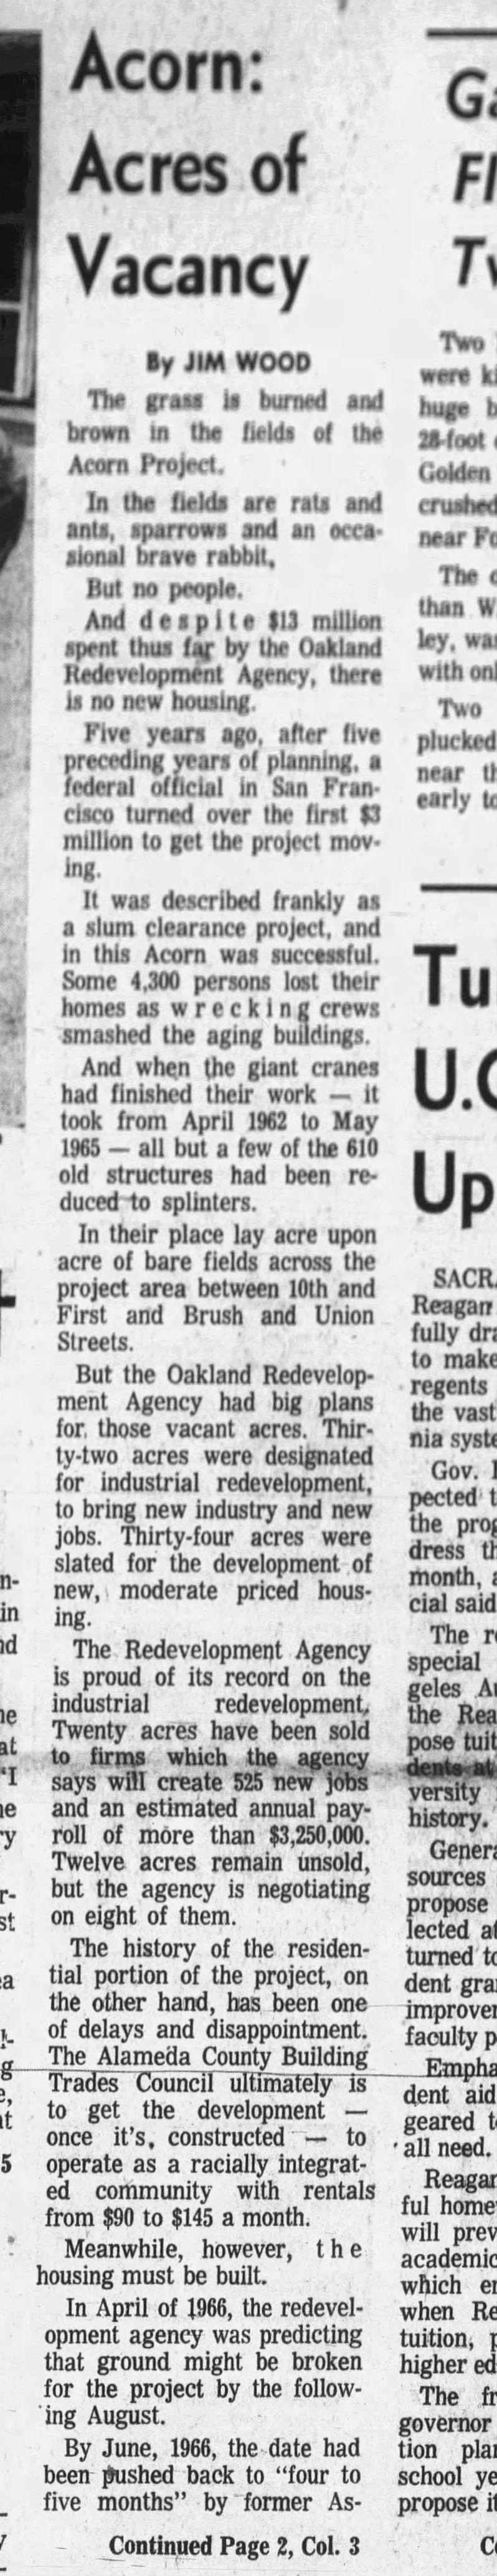 Acorn: Acres of Vacancy Pt 1- Oakland Tribune July 10, 1967